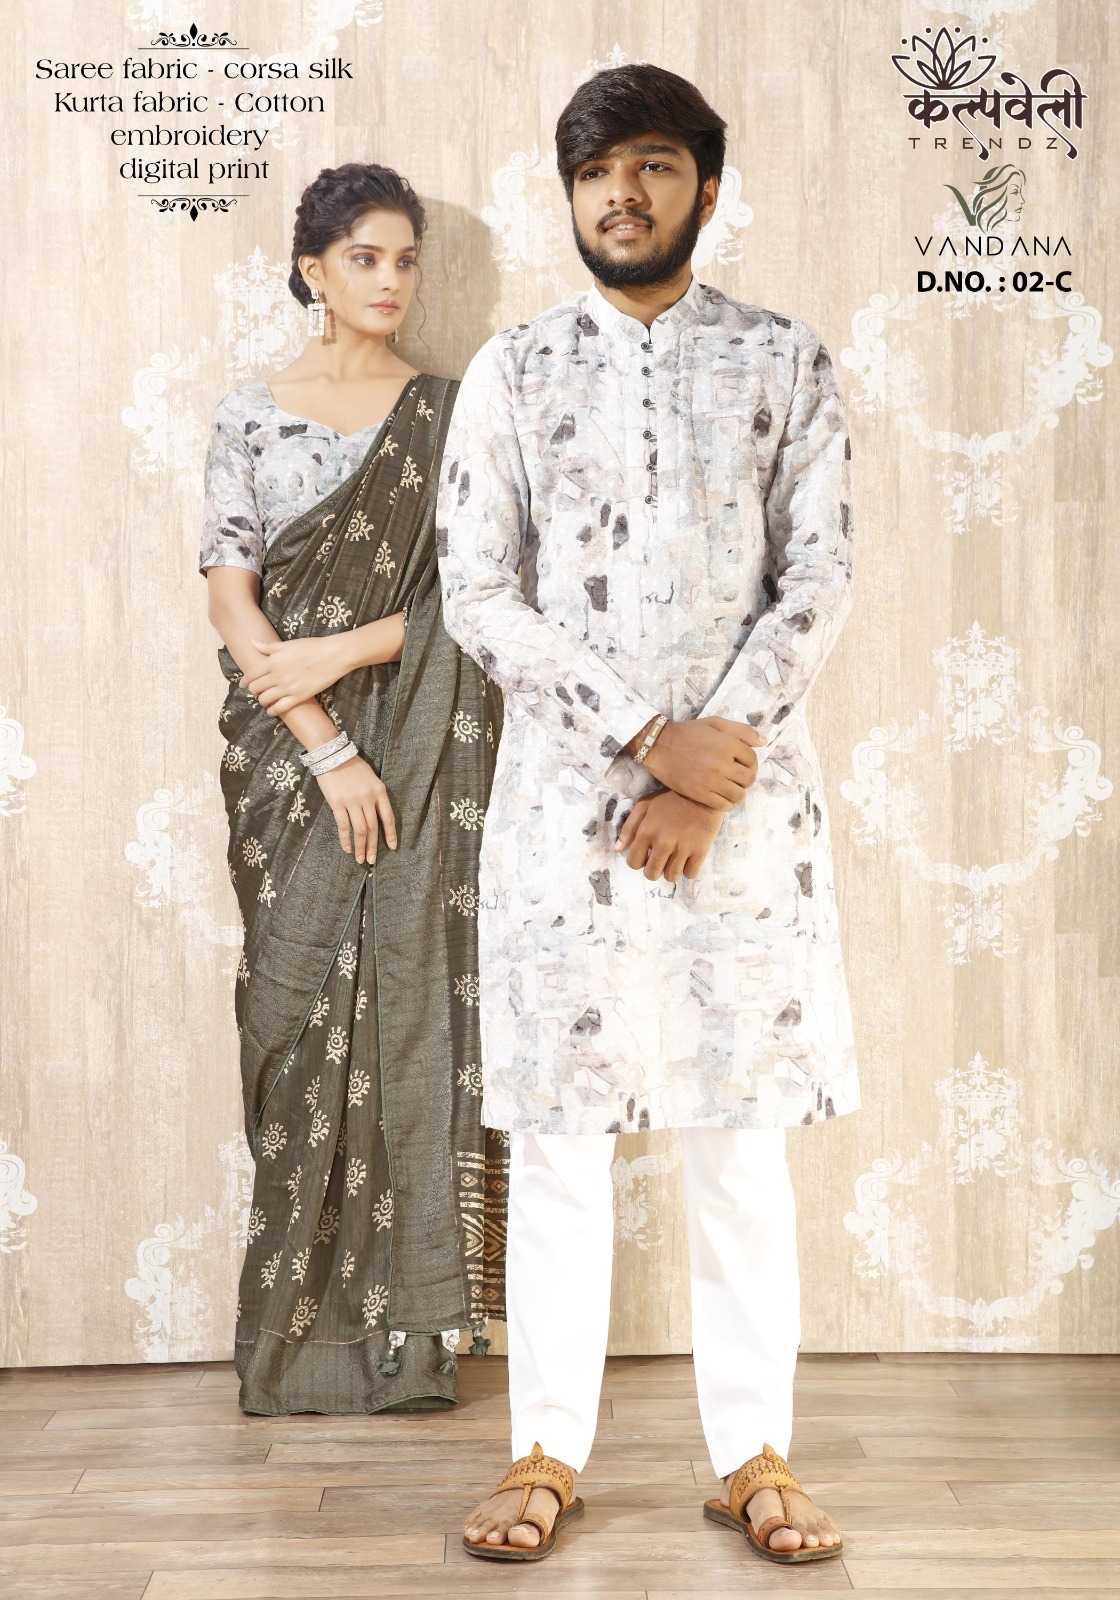 kalpavelly trendz vandana vol 2 navratri special saree with matching unstitch kurta for couples